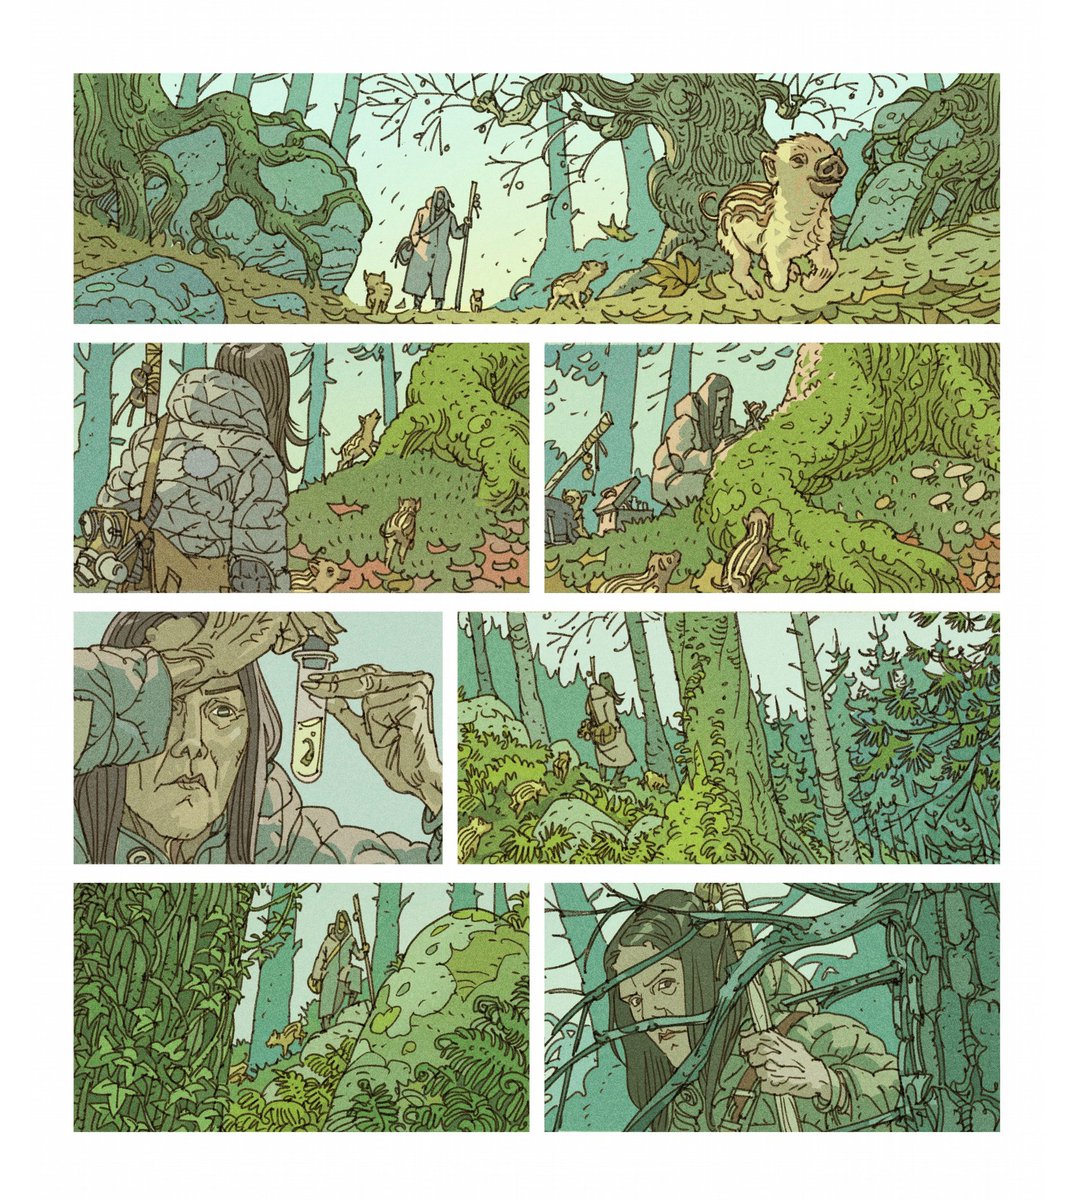 "NeoForest", tome 1, à paraîter en janvier 2023, @editionsdargaud - Fred Duval au scénario, Philippe Scoffoni au dessin et couleur - Les 2 premières pages... 